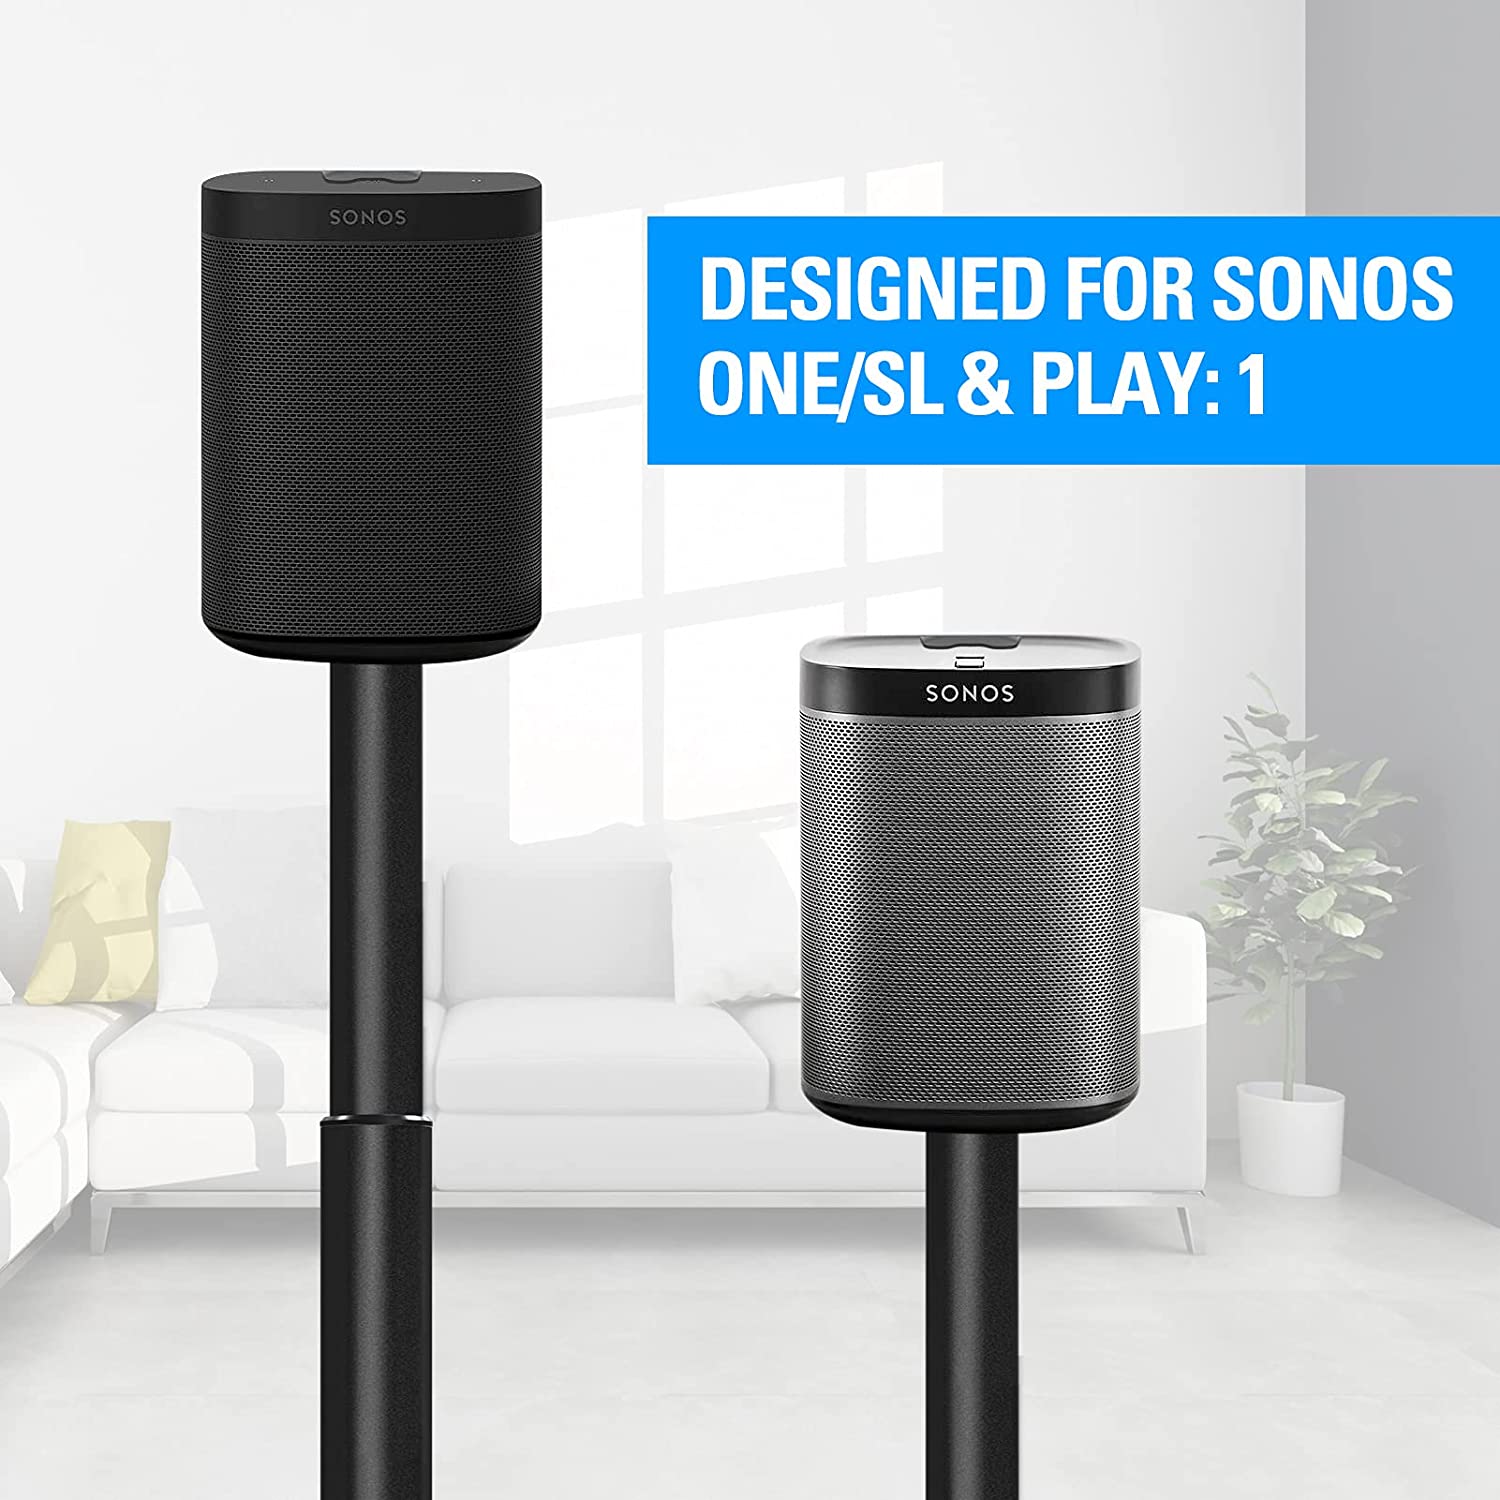 1 Sonos speaker stand